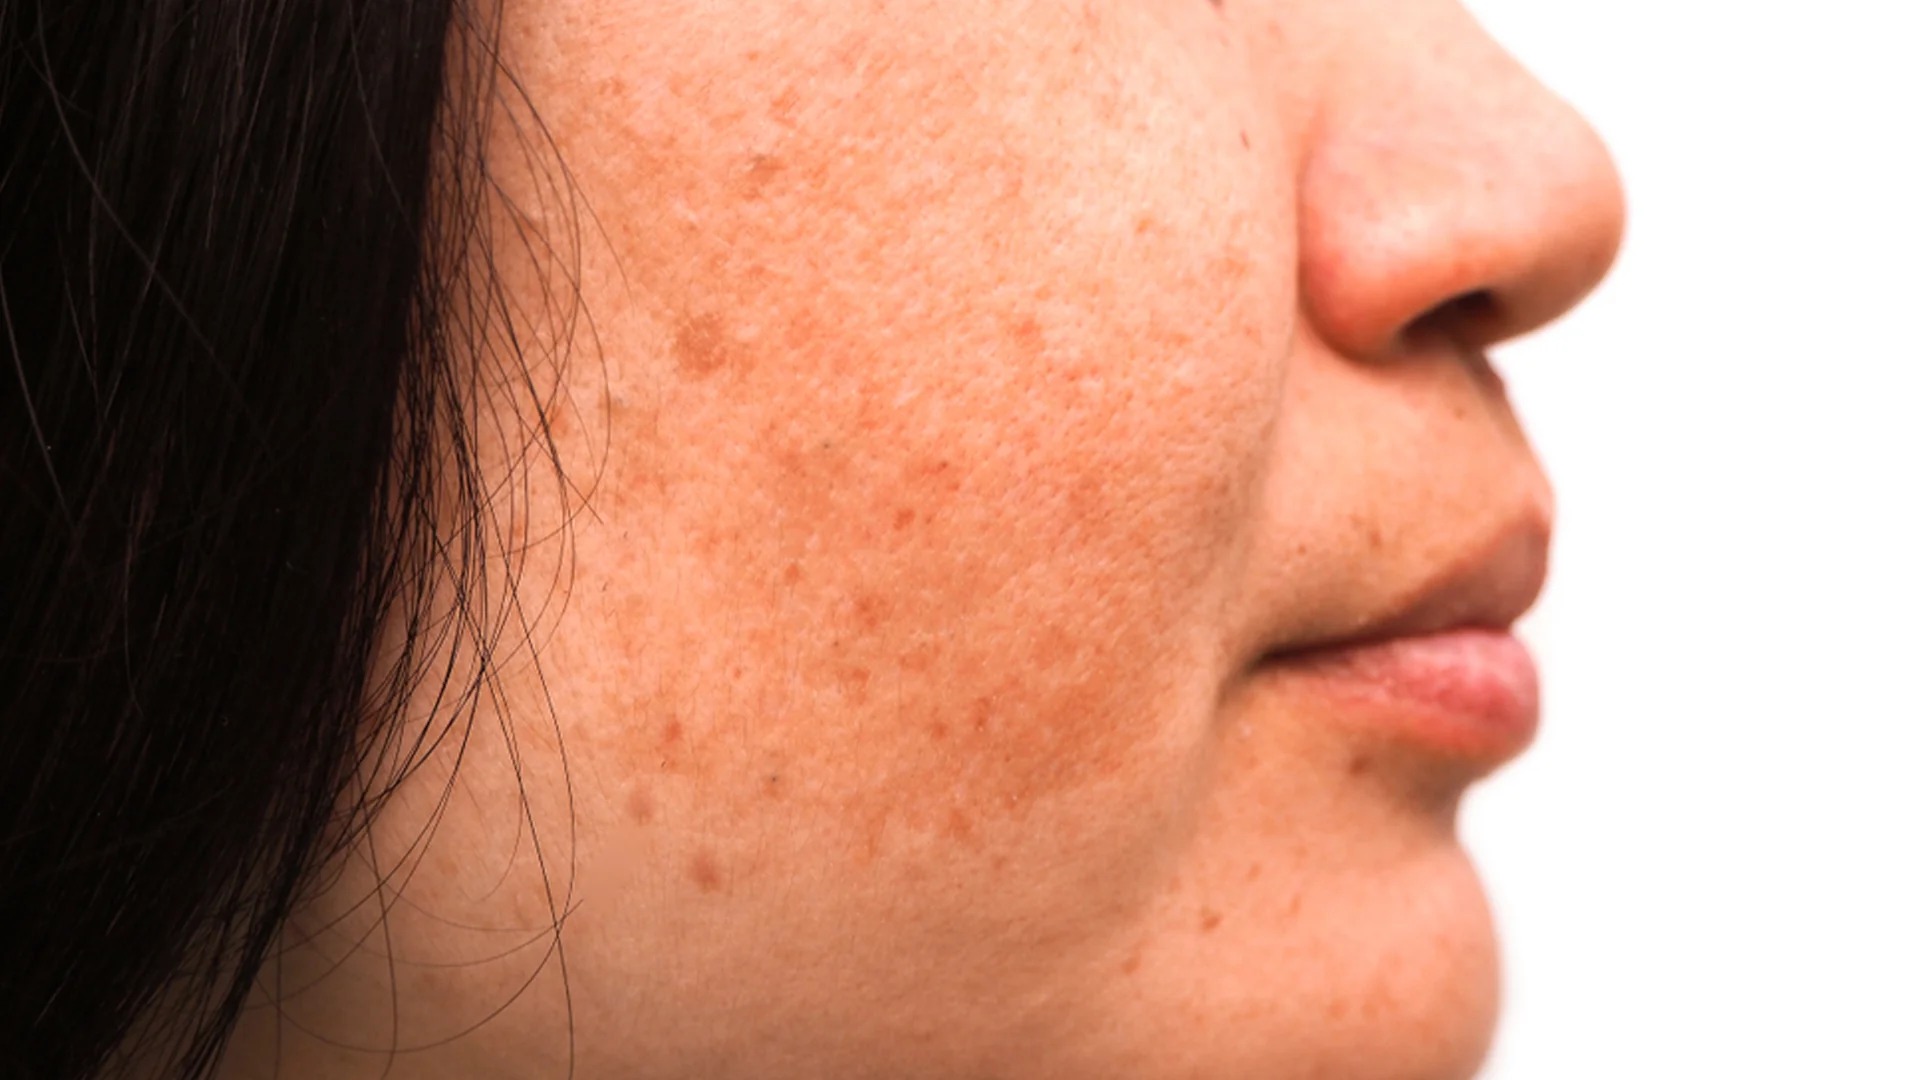 Nám da là hiện tượng tăng sắc tố trên bề mặt da, gây nên các vết đốm sạm trên da